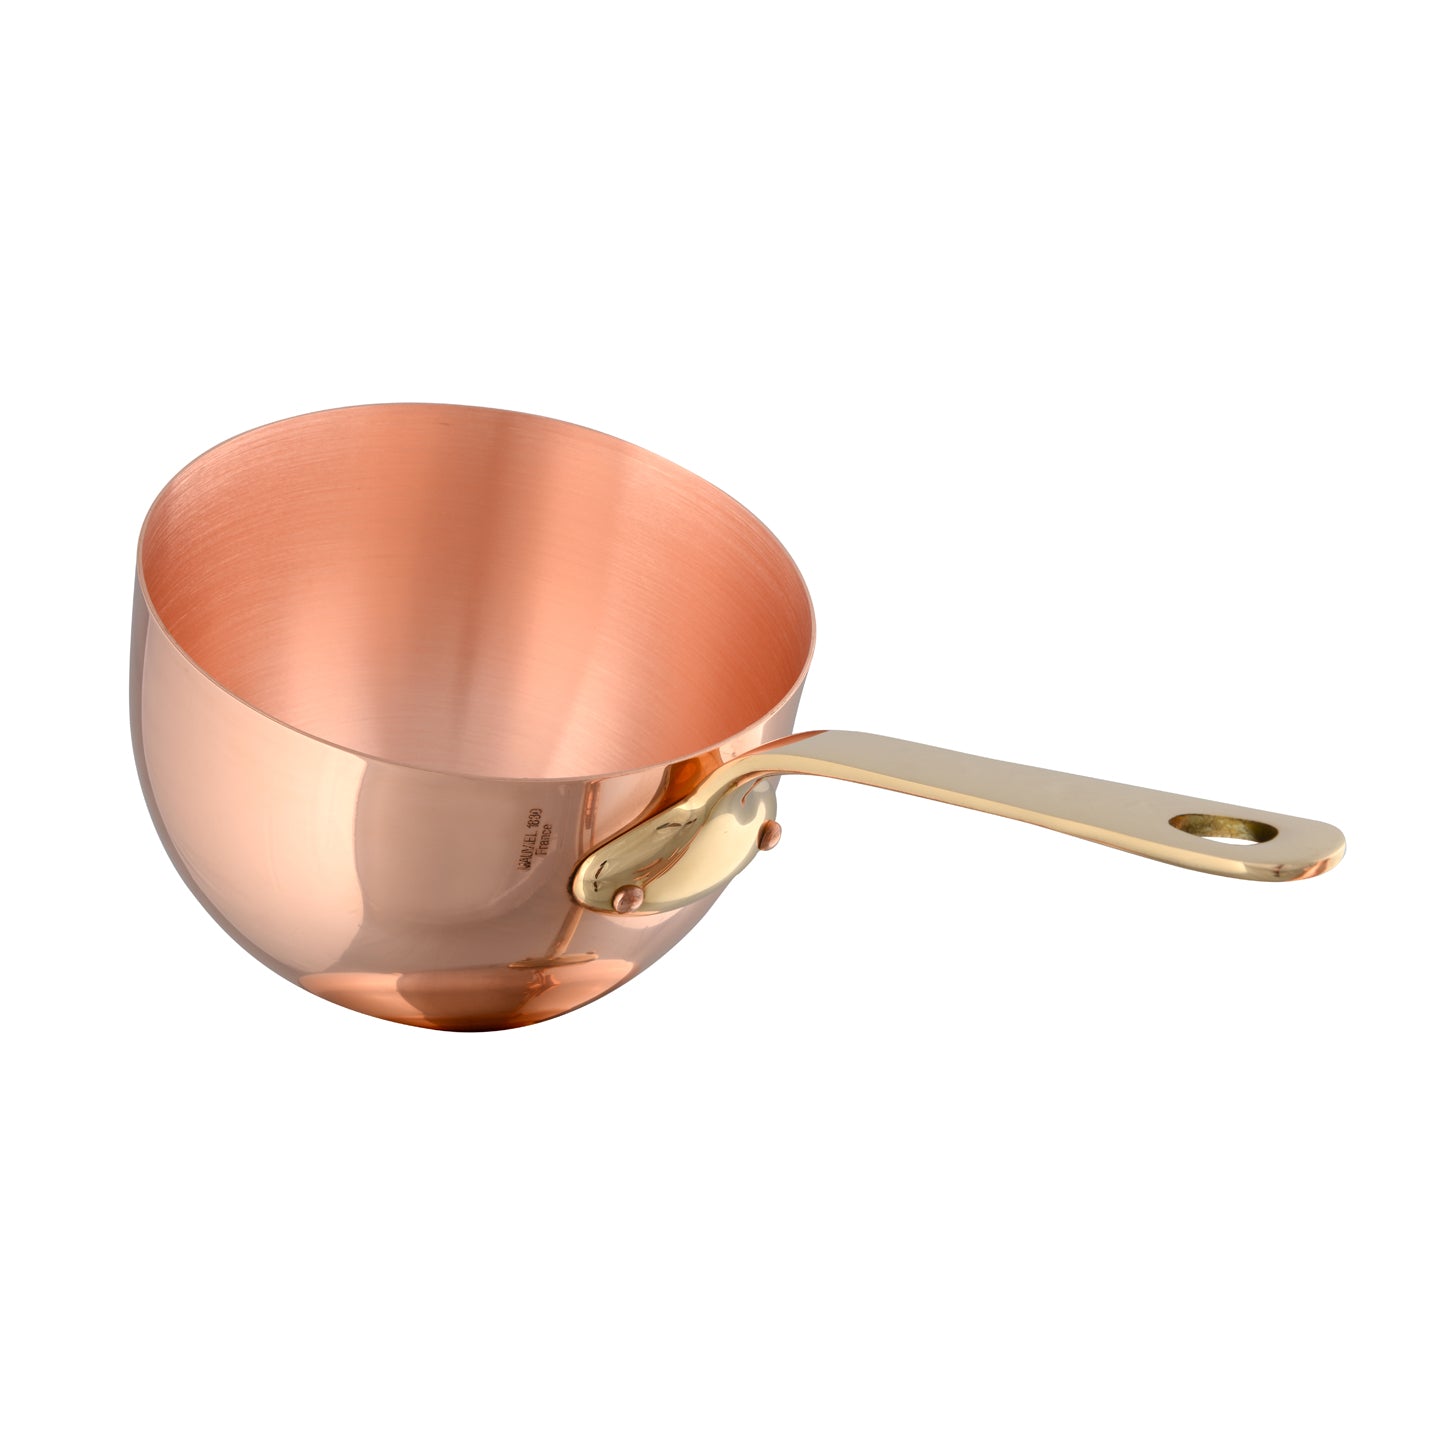 Mauviel M'Passion Copper Zabaglione Pan